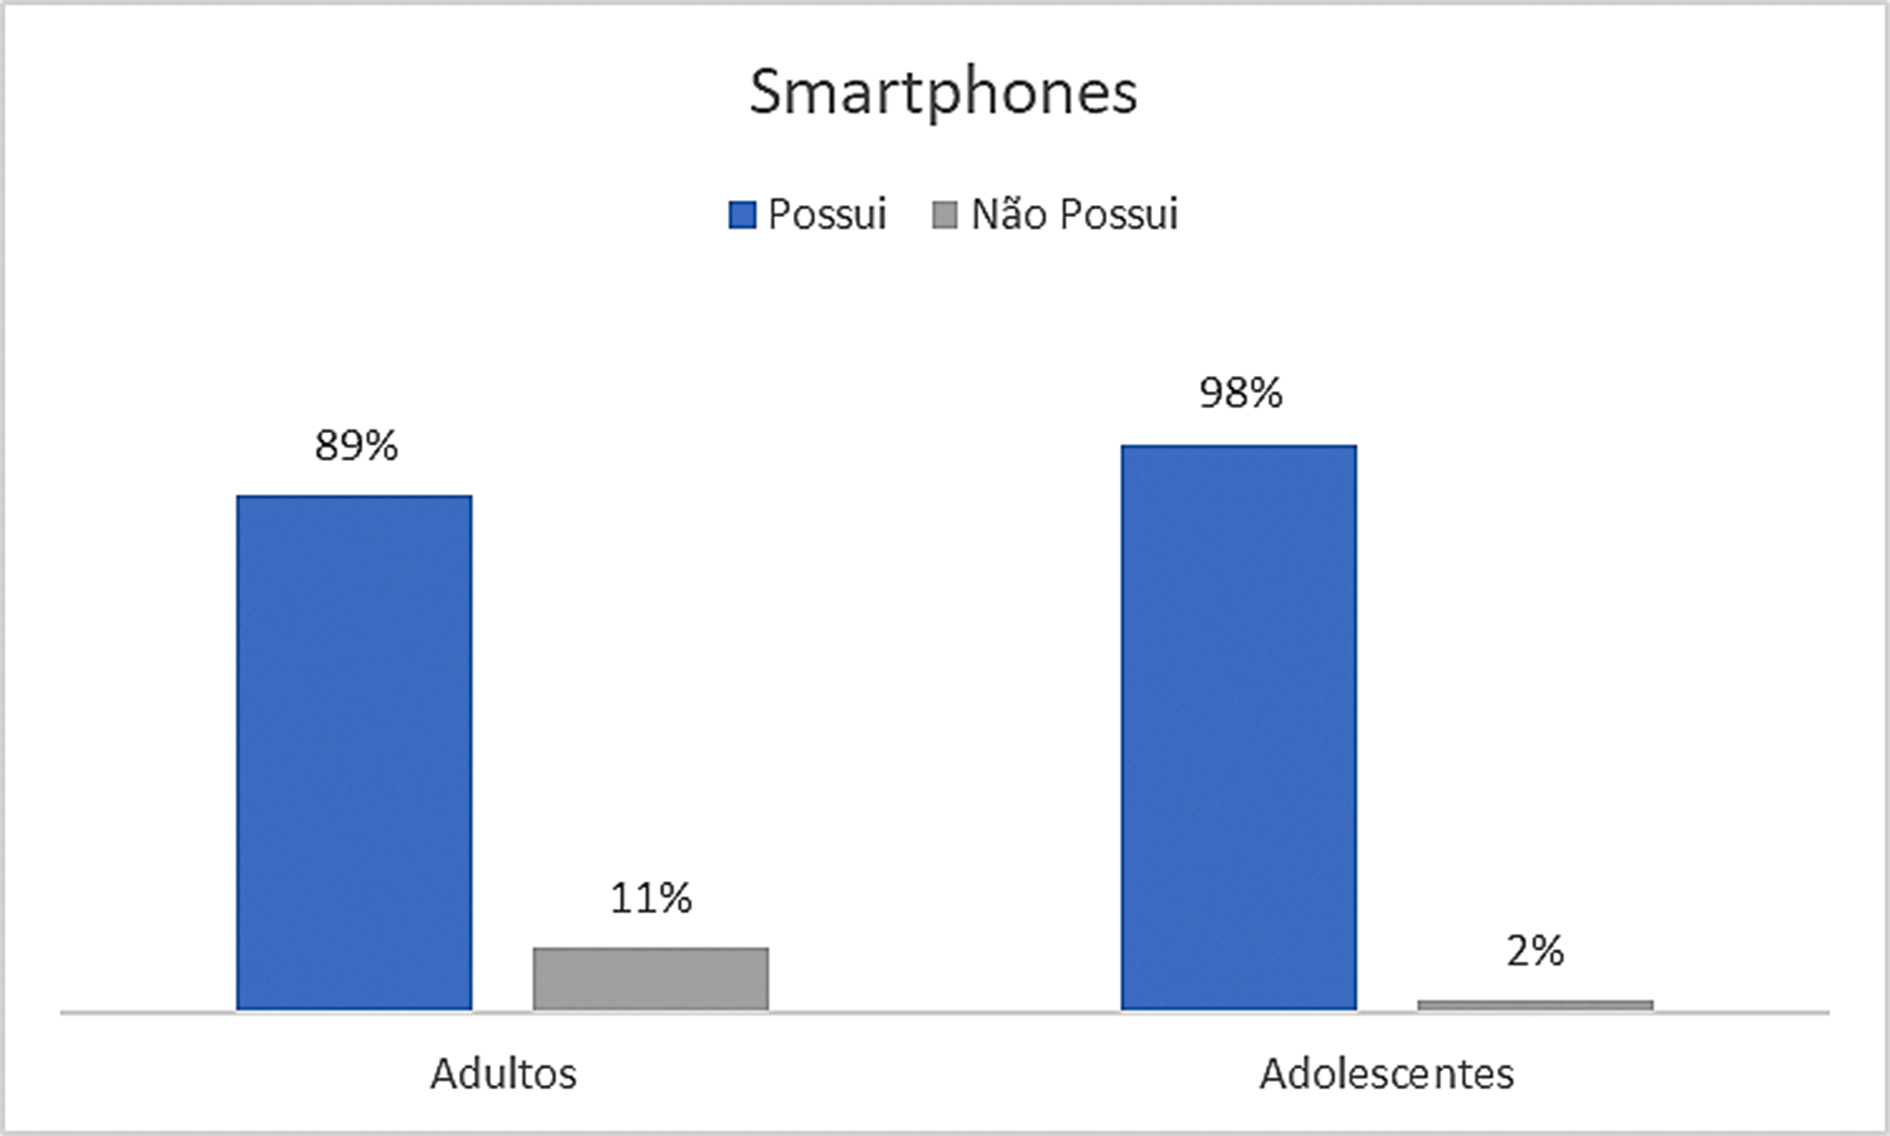 Frequência relativa do uso de smartphones na amostra